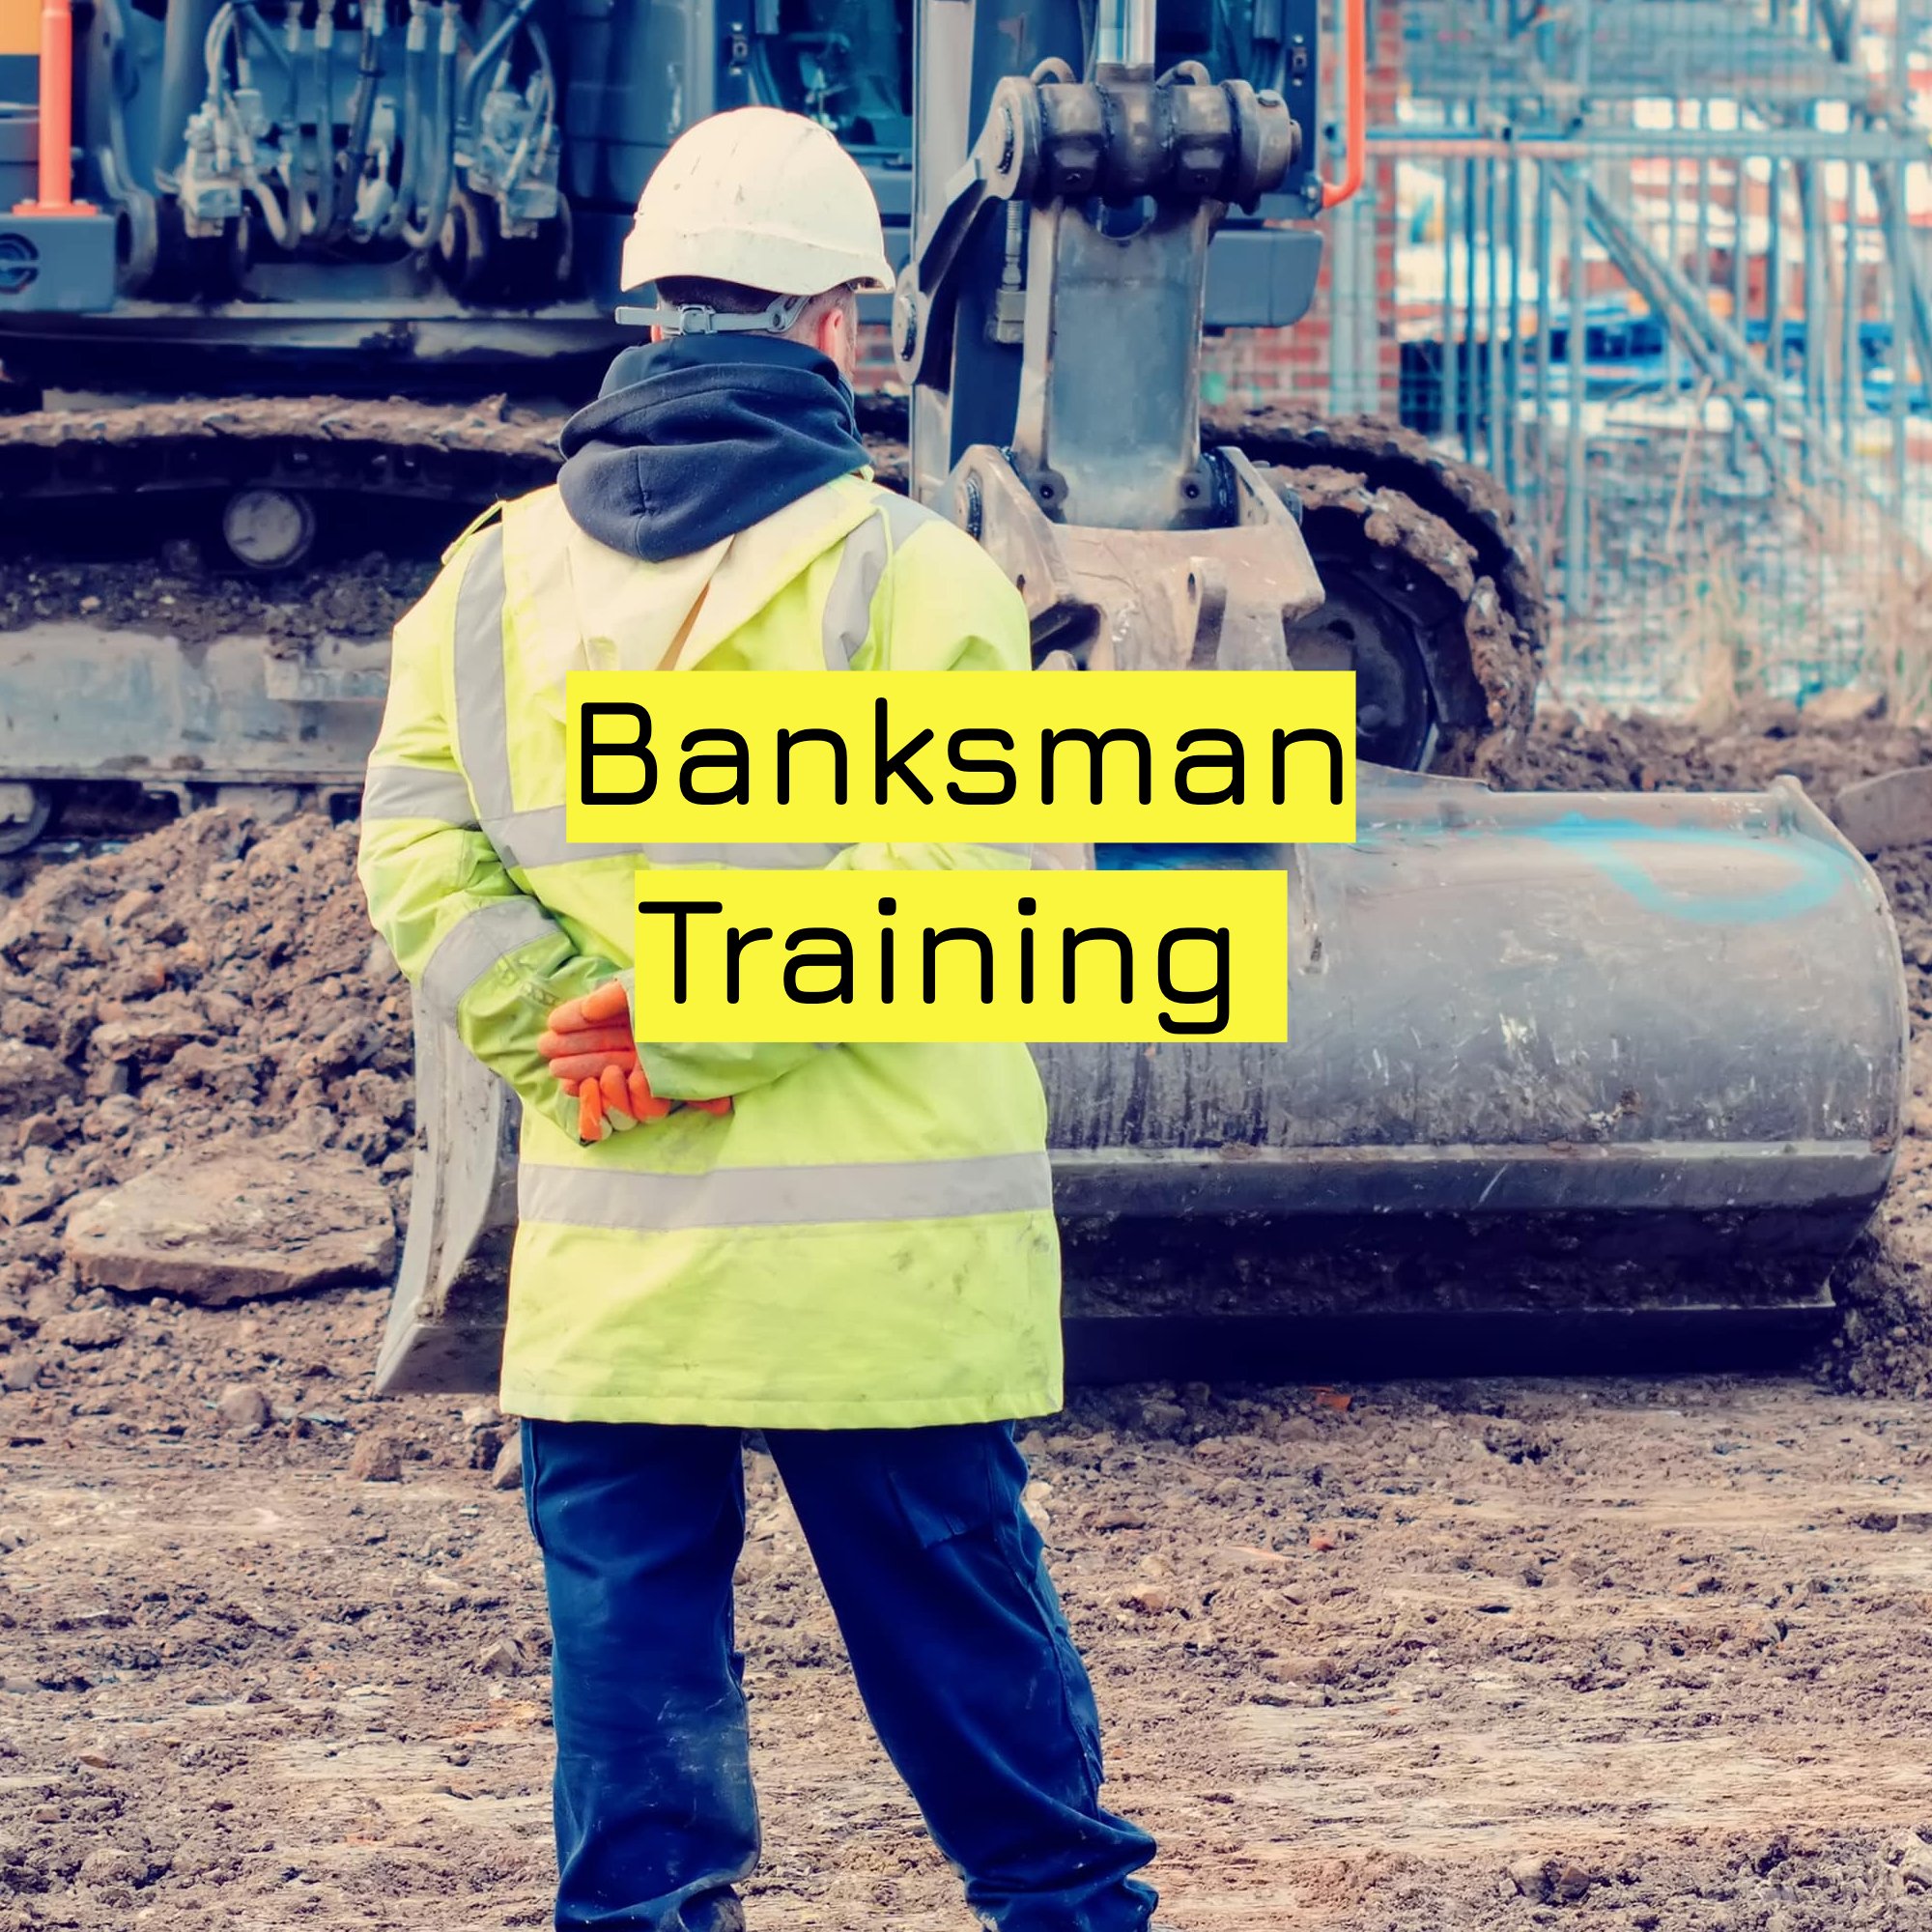 Banksman Training .jpg